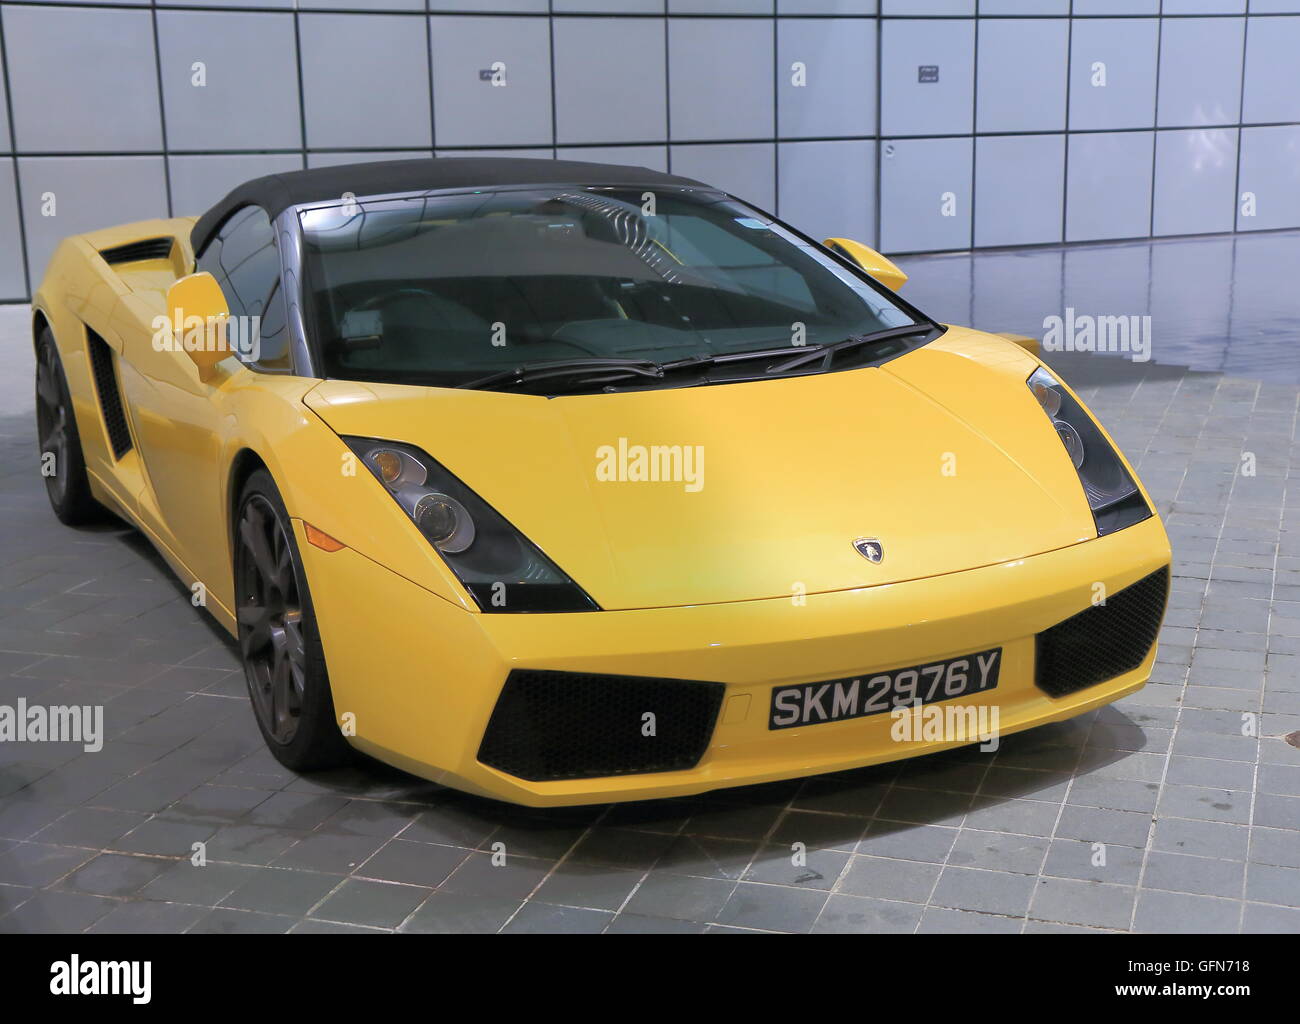 Yellow Lamborghini car Stock Photo